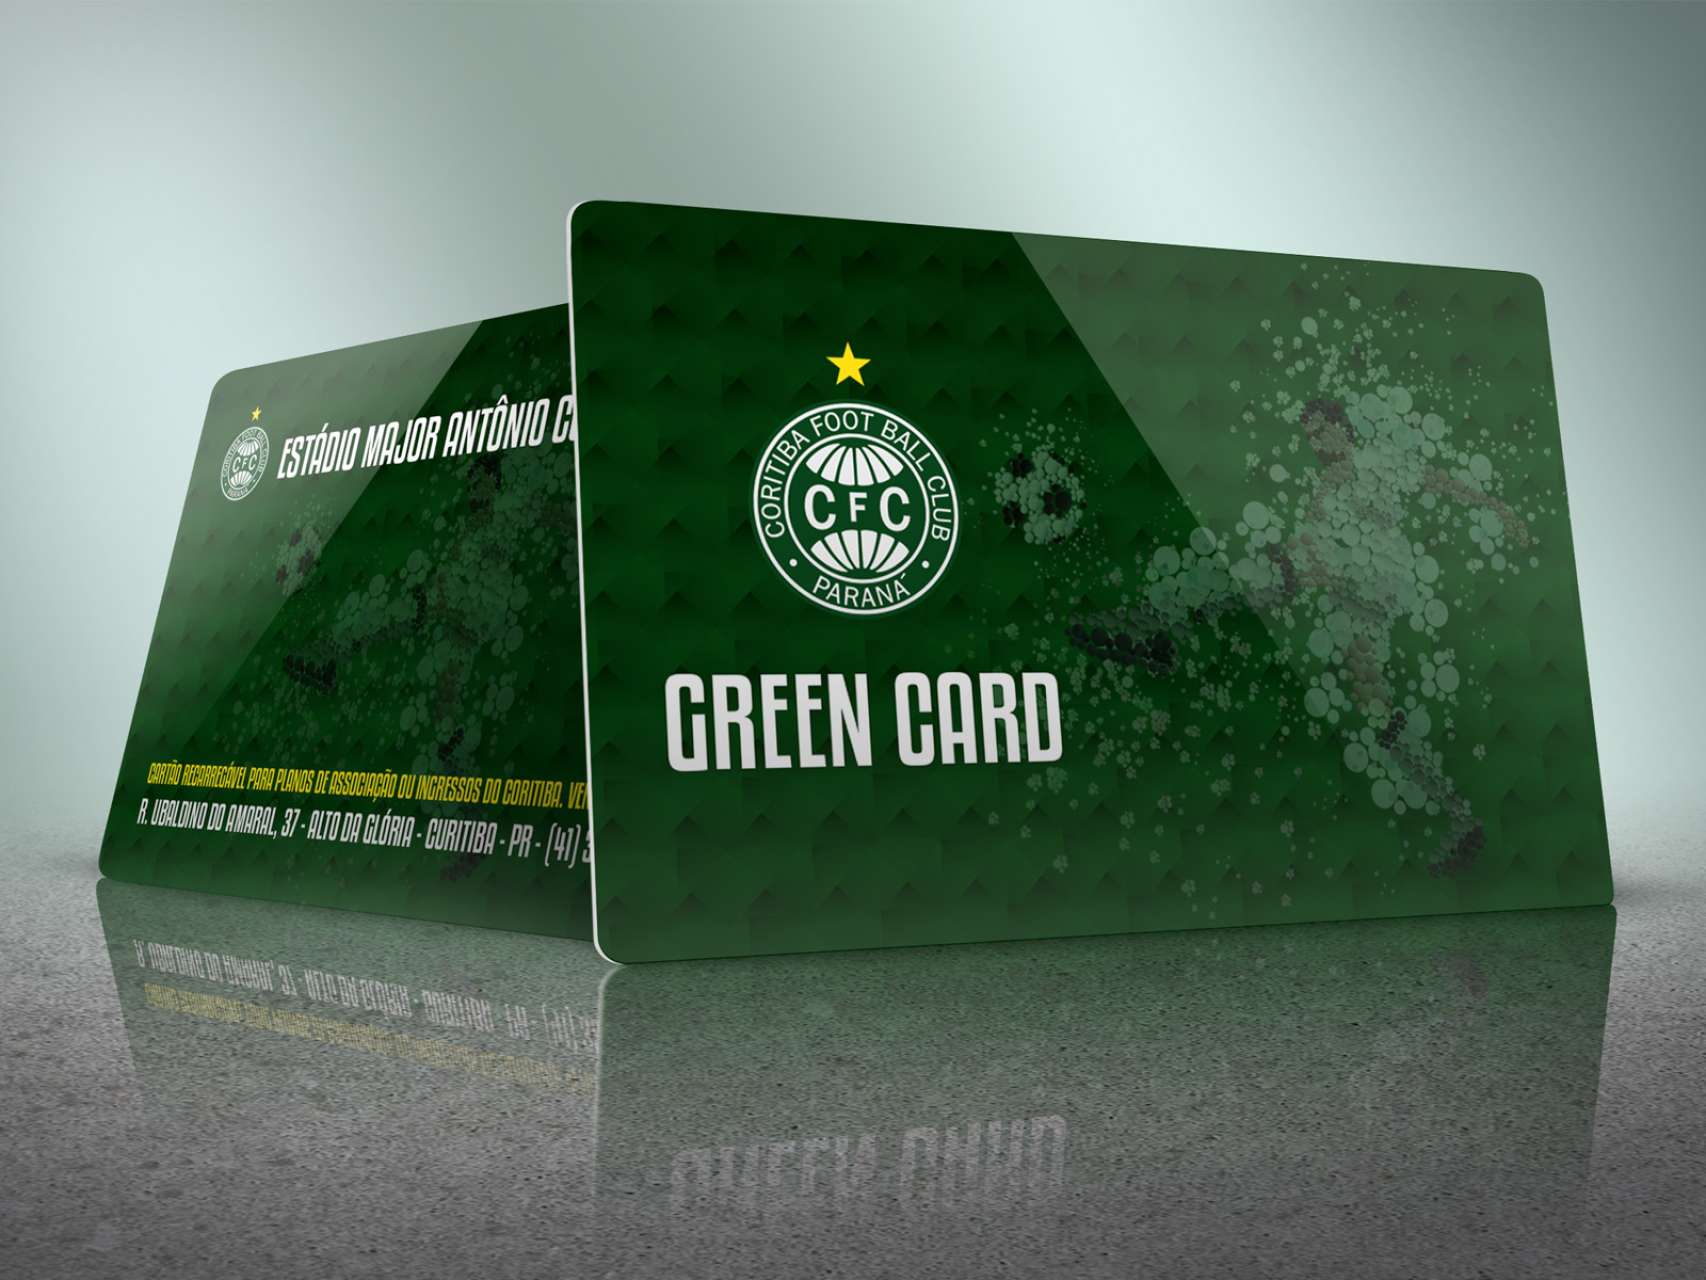 ltimos dias para adquirir o Green Card Paranaense 2017